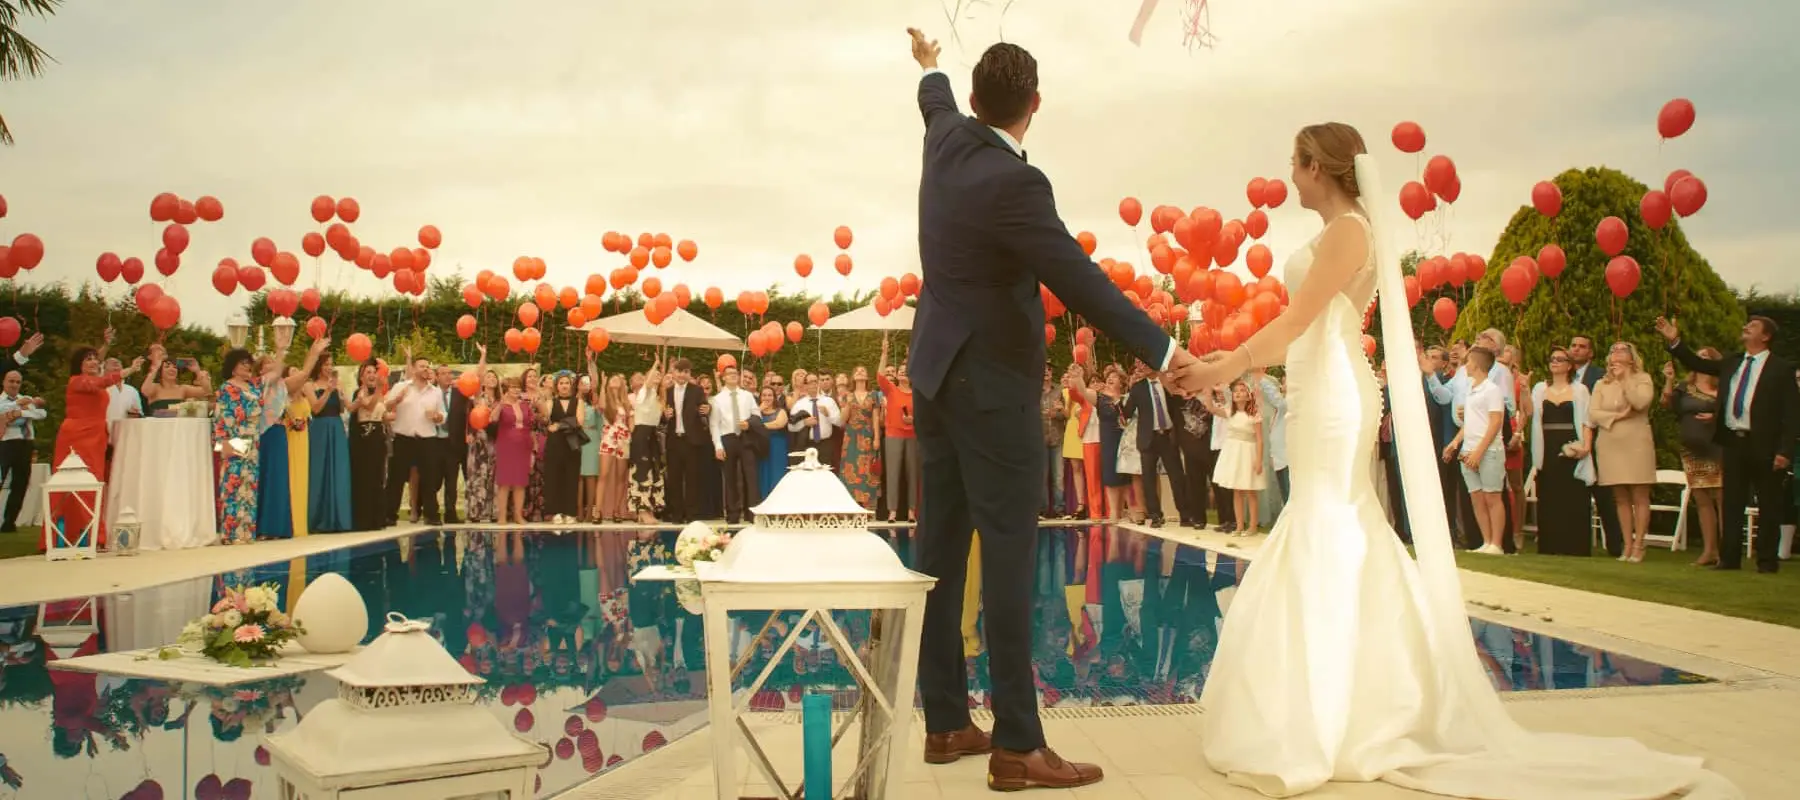 Um casal vestido com trajes de casamento, de mãos dadas, segurando balões de festa e acenando para seus convidados segurando balões vermelhos do outro lado de uma piscina ao ar livre